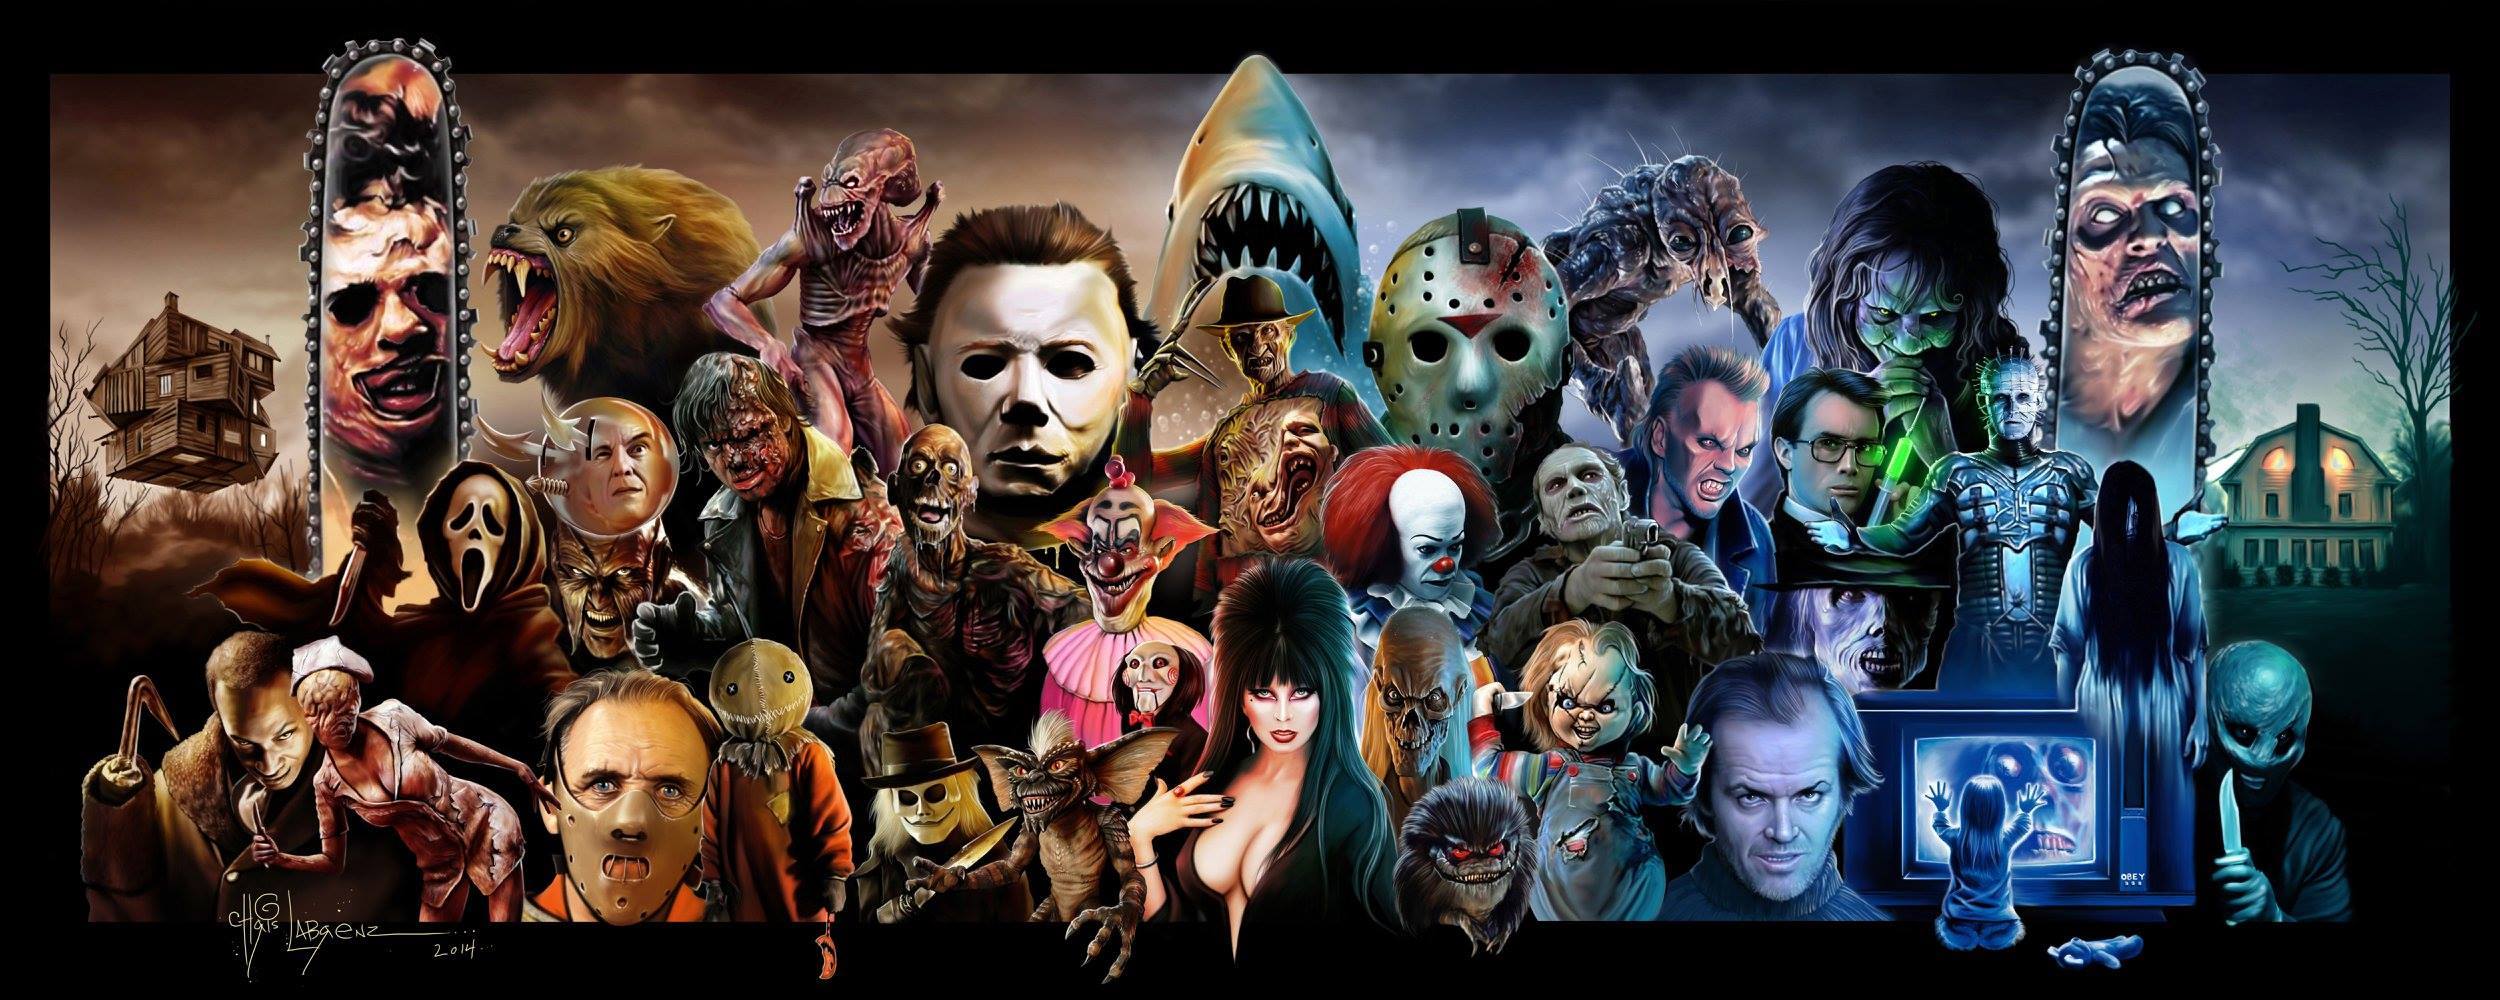 Horror Characters Wallpapers - Top Những Hình Ảnh Đẹp